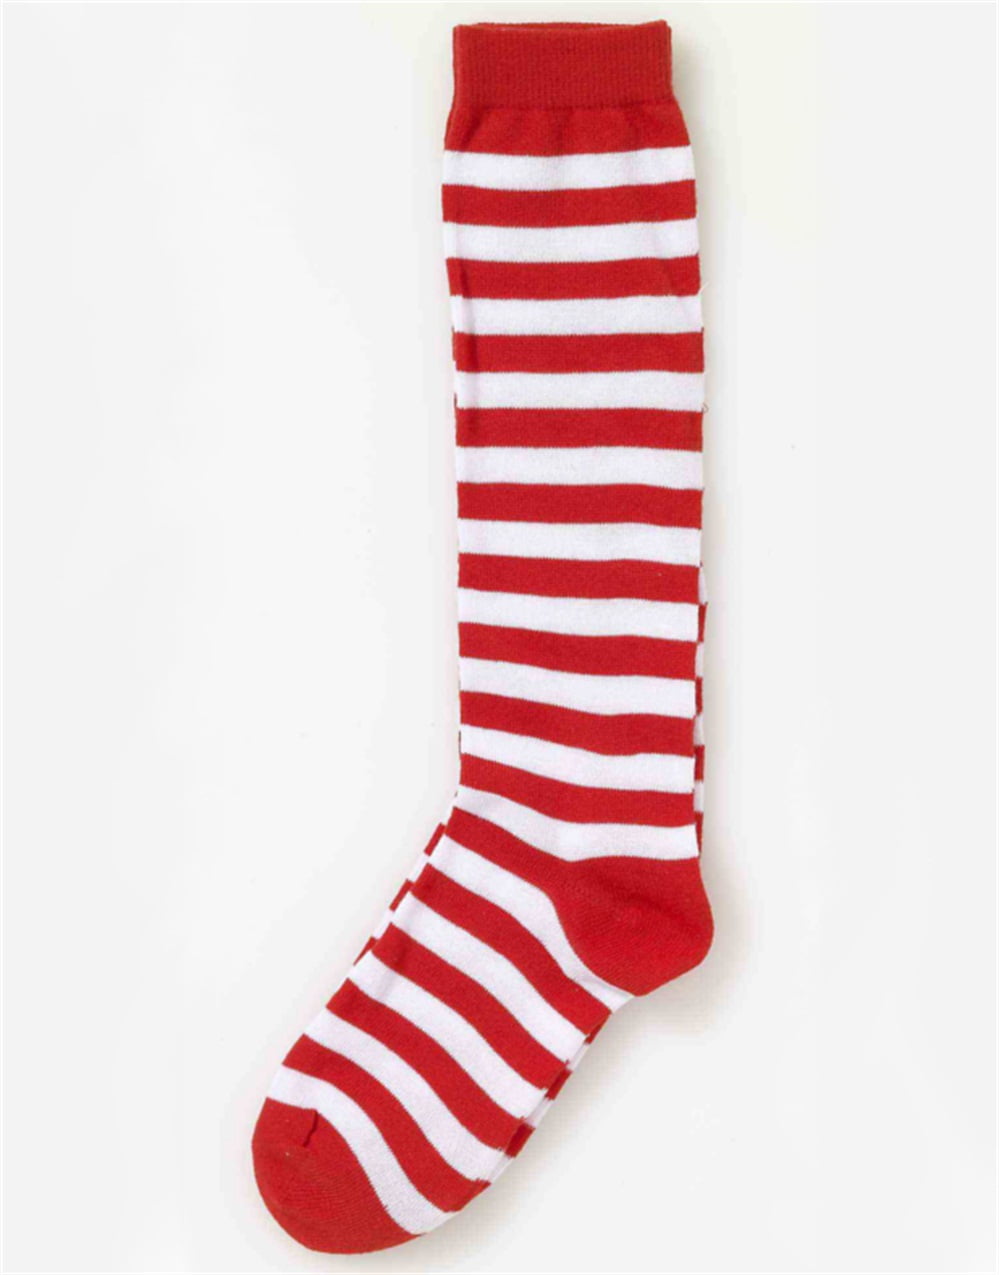 Kina Grundlæggende teori samarbejde Children's Red and White Striped Socks - Walmart.com